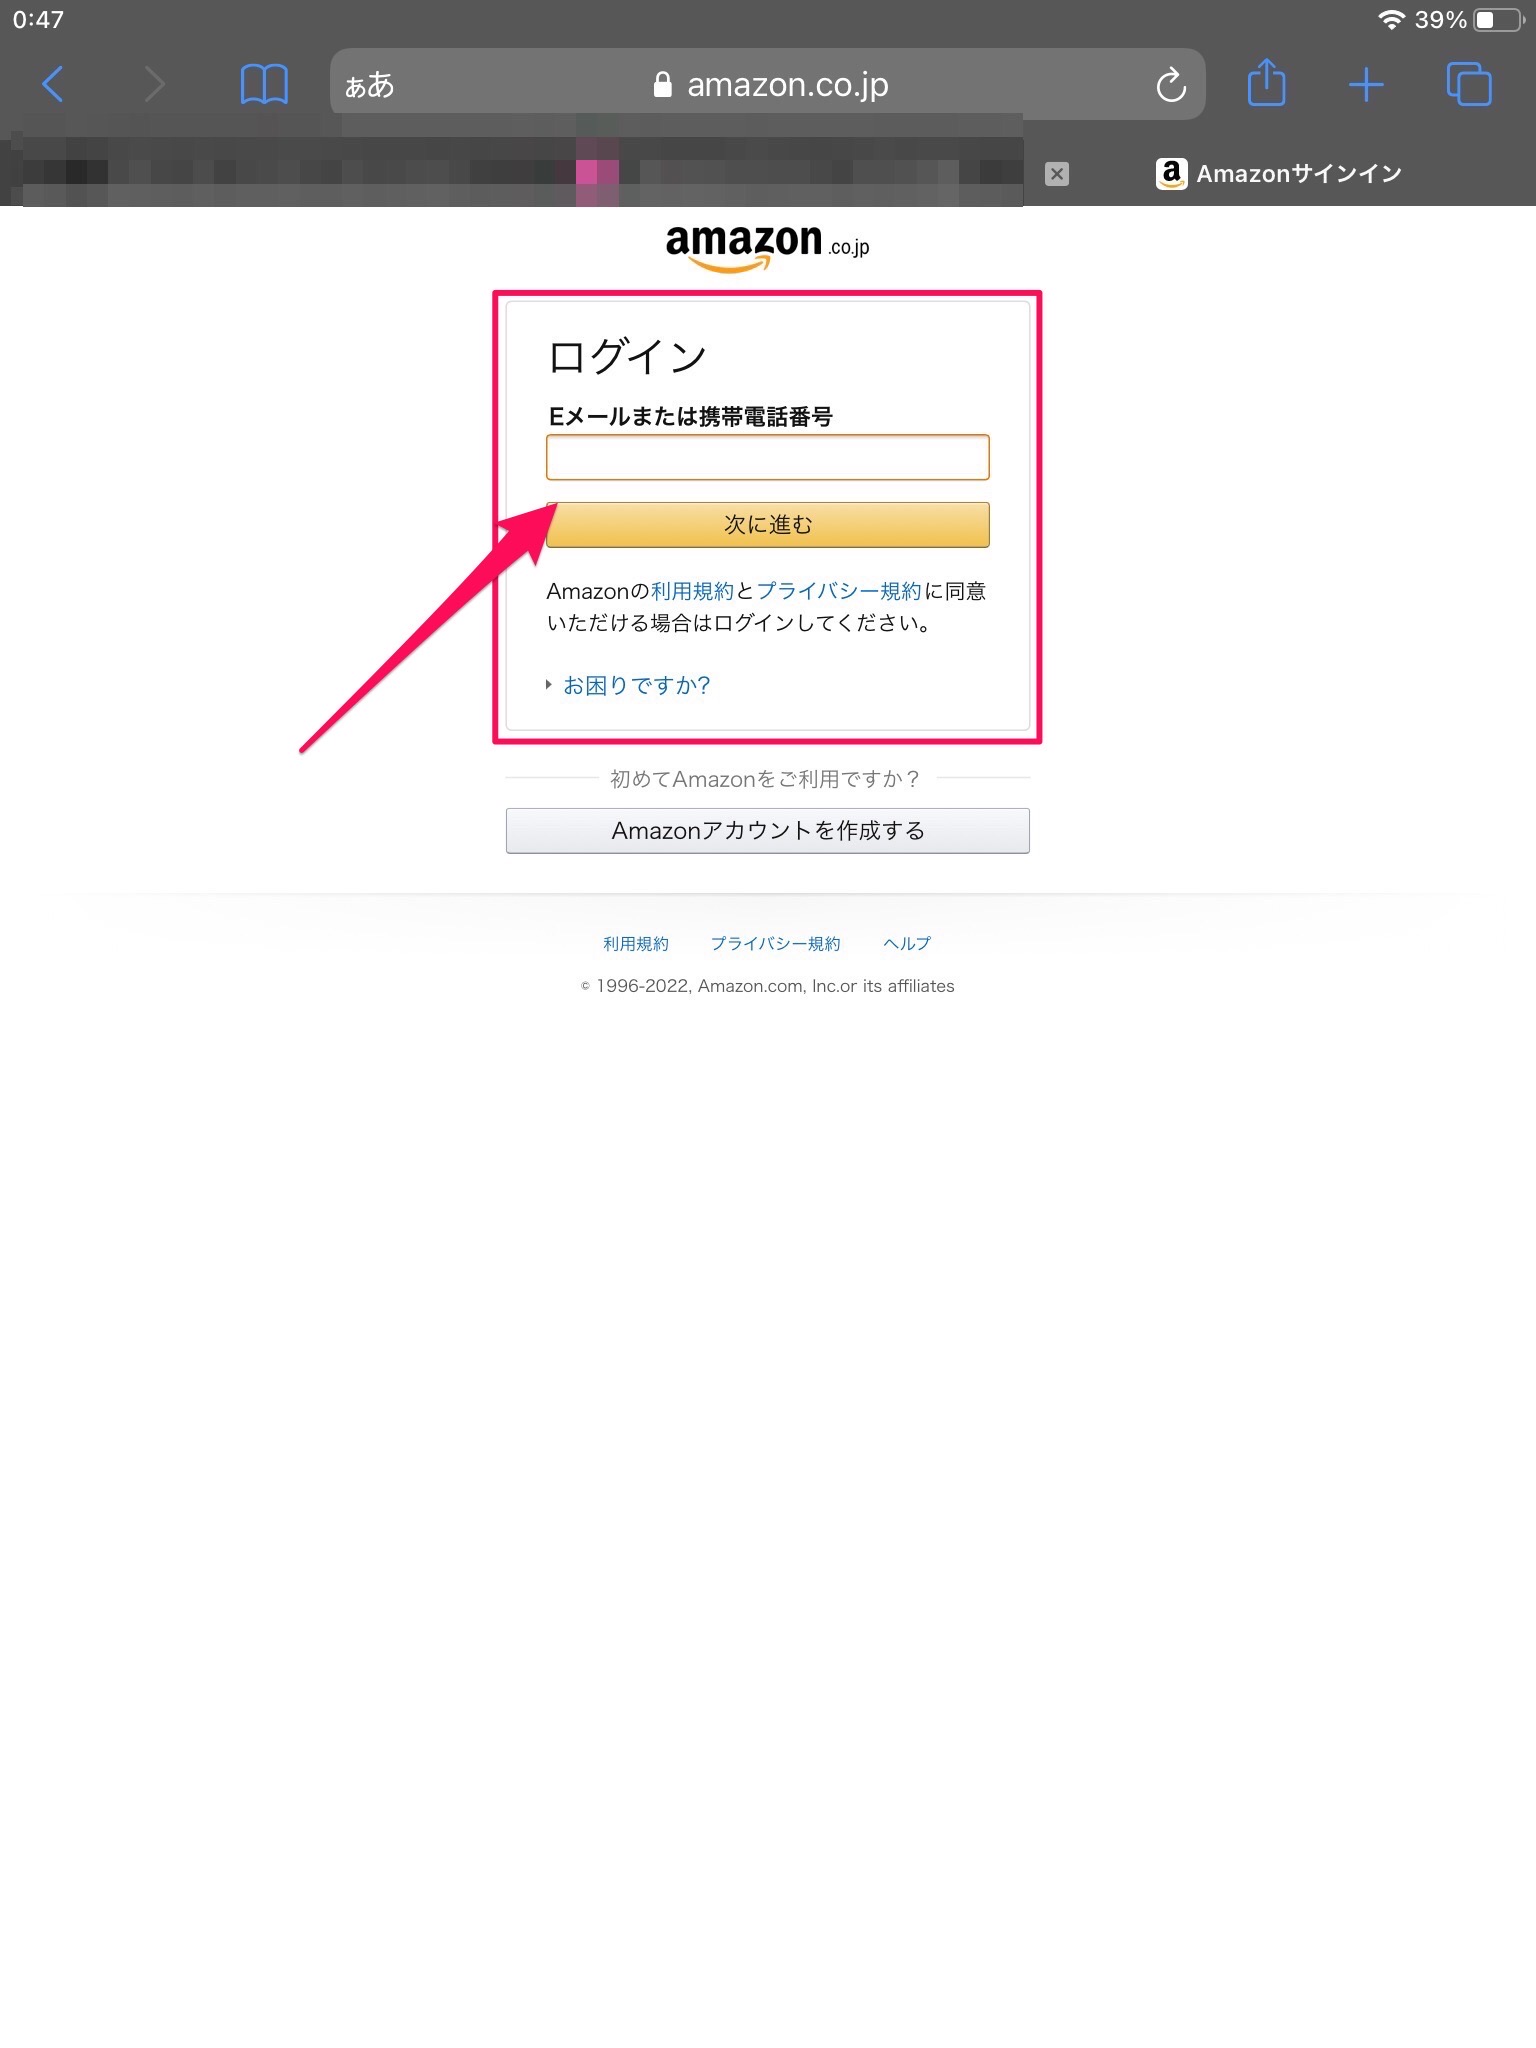 Amazon.co.jp ログイン画面